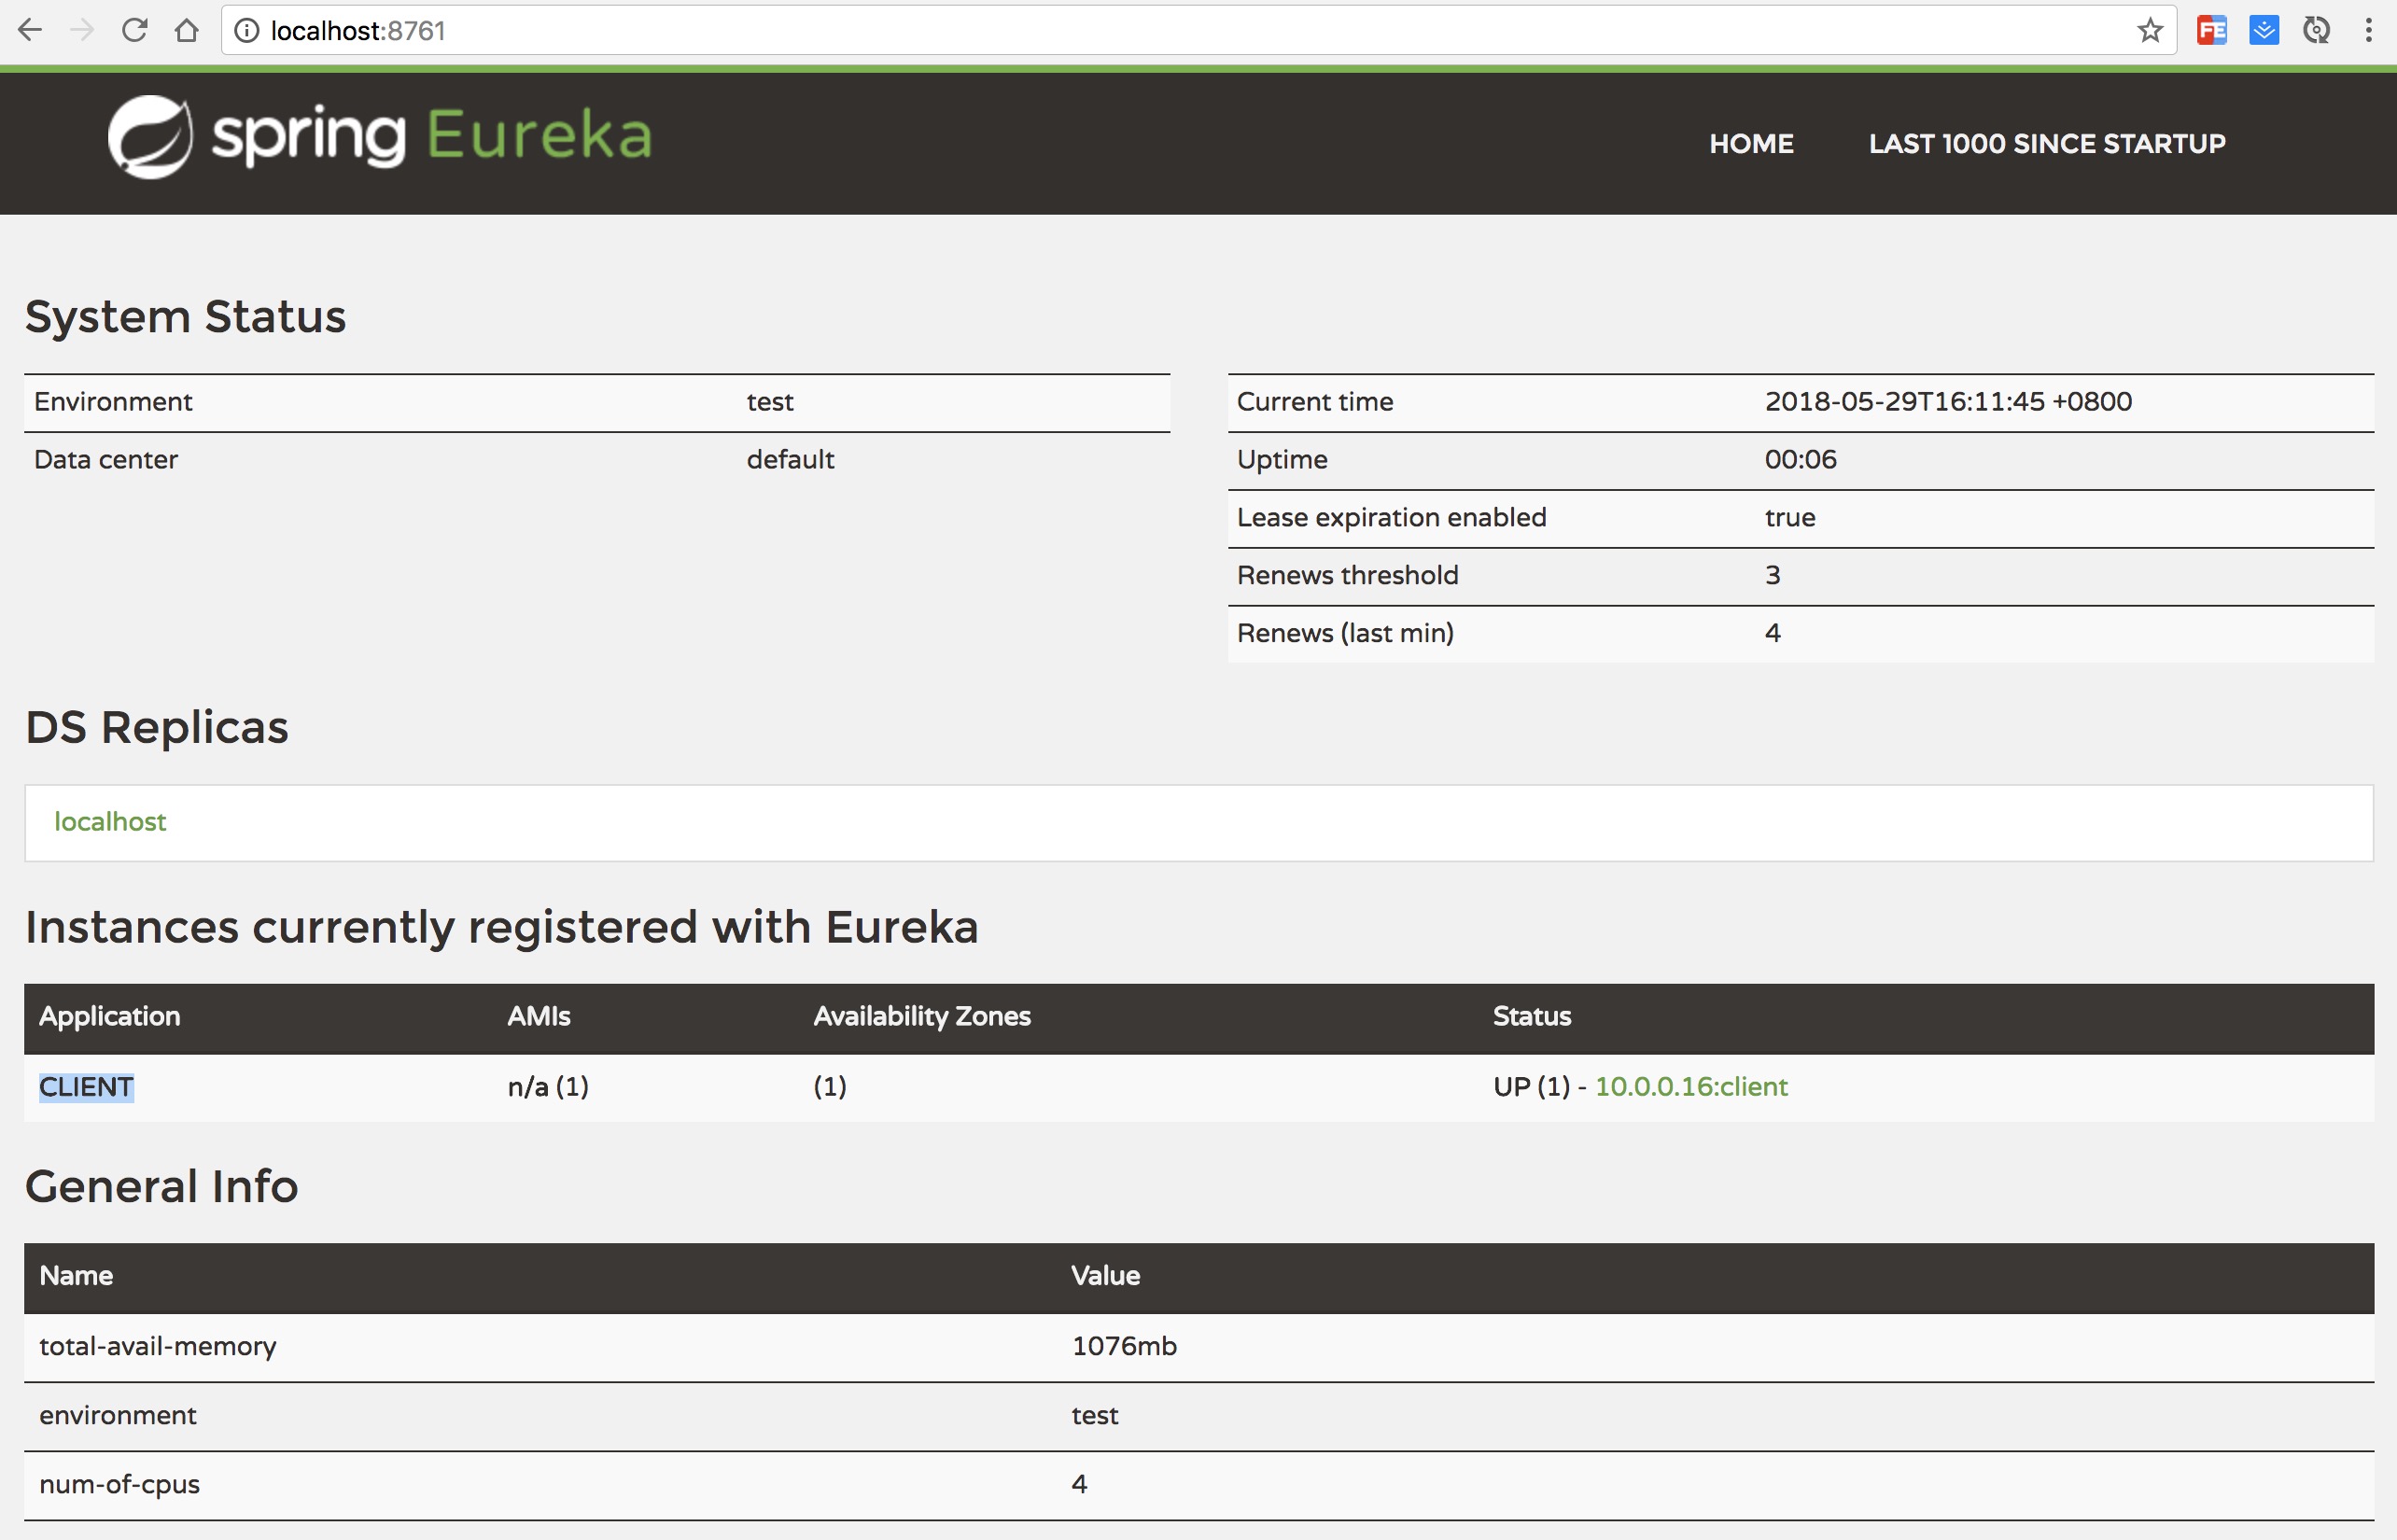 eureka client registered